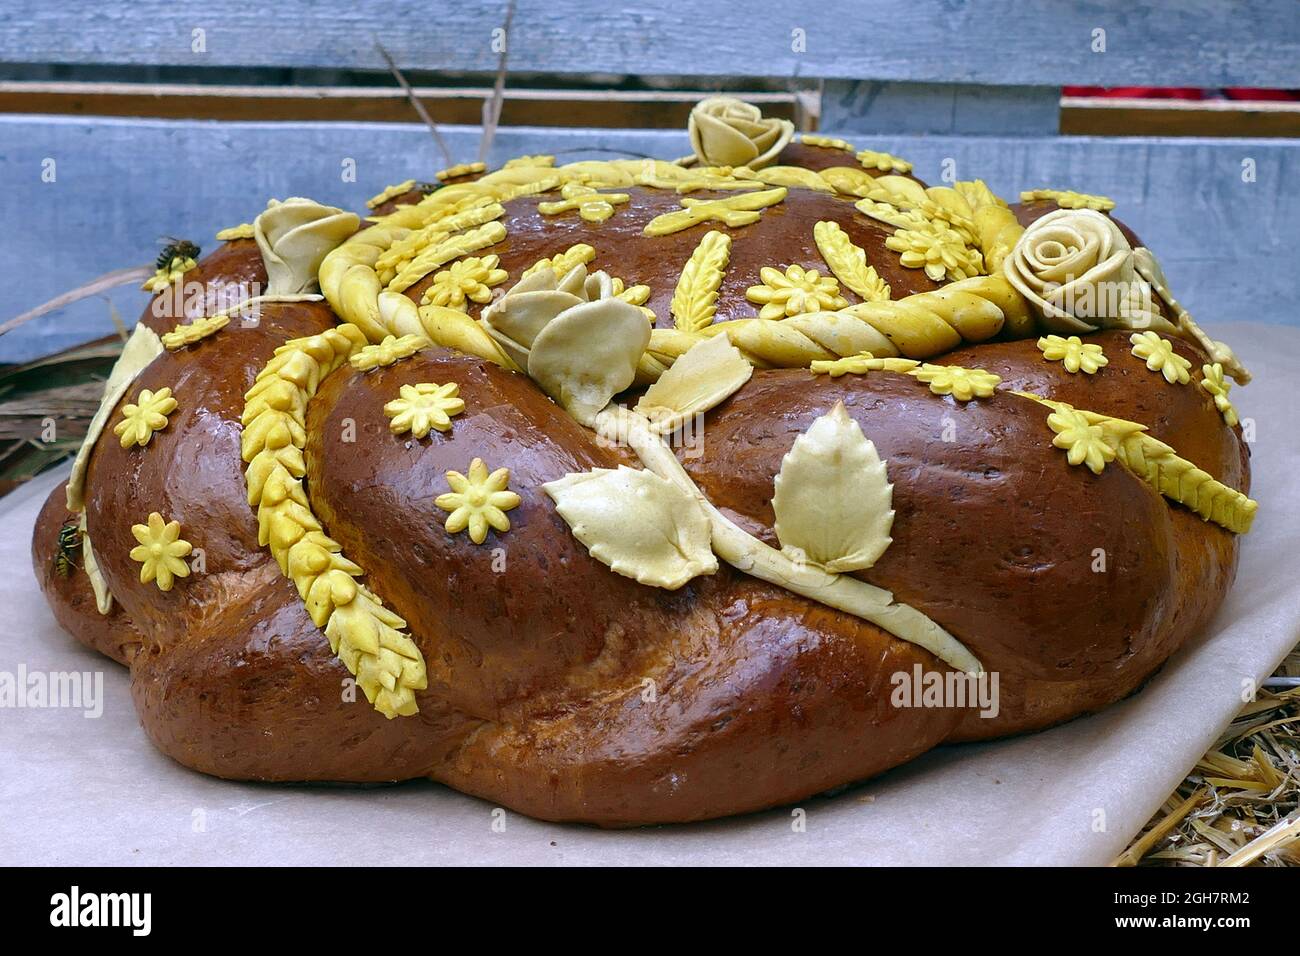 IVANO-FRANKIVSK, UKRAINE - 5. SEPTEMBER 2021 - Ein Korovai, die Art von Brot, die am häufigsten bei Hochzeiten verwendet wird, ist während des Brotfestivals abgebildet Stockfoto